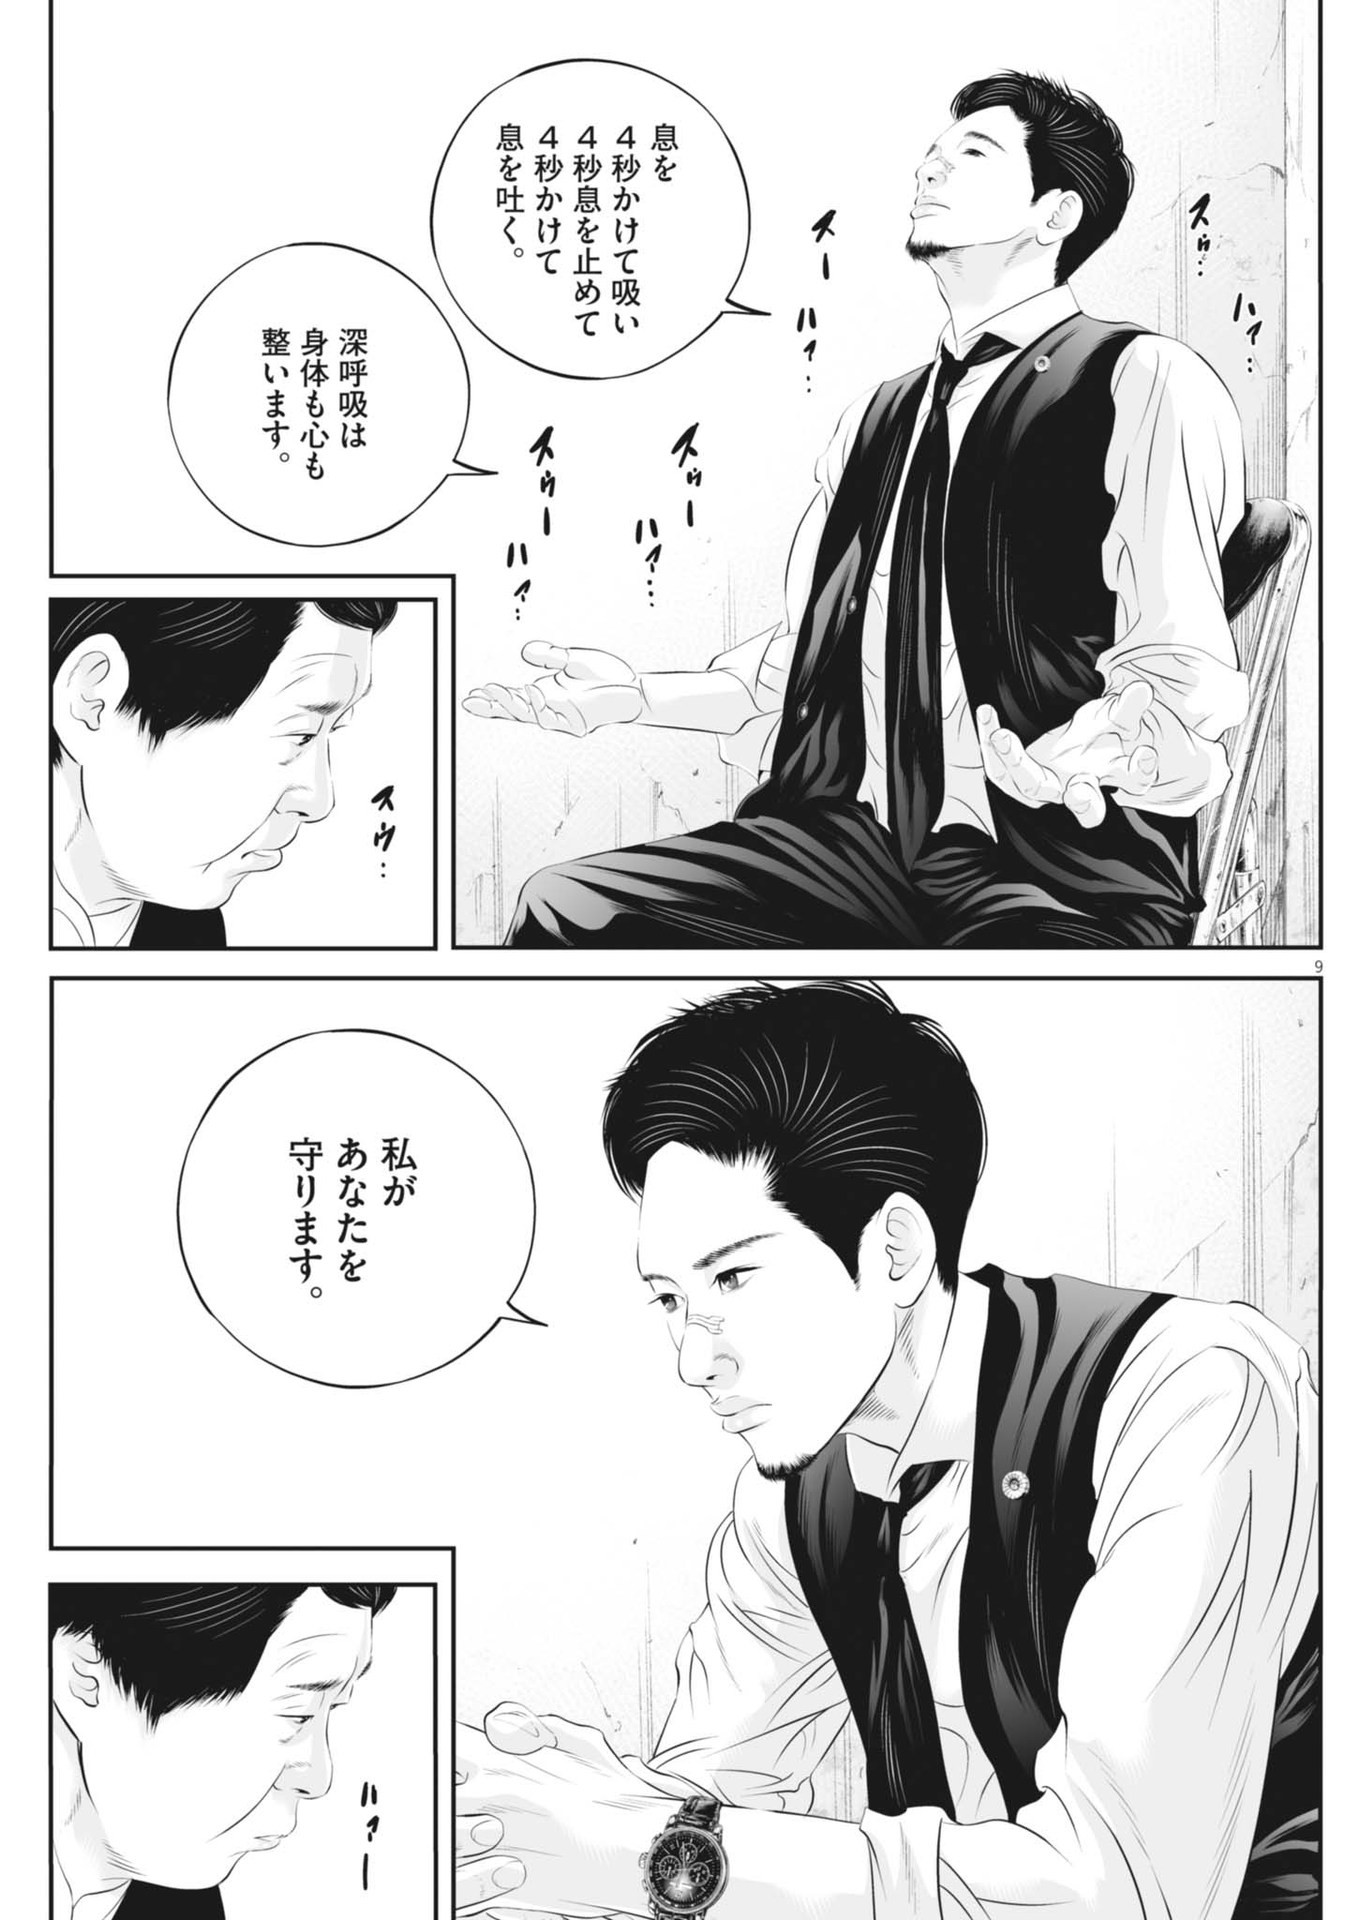 Kujou no Taizai - Chapter 104 - Page 9